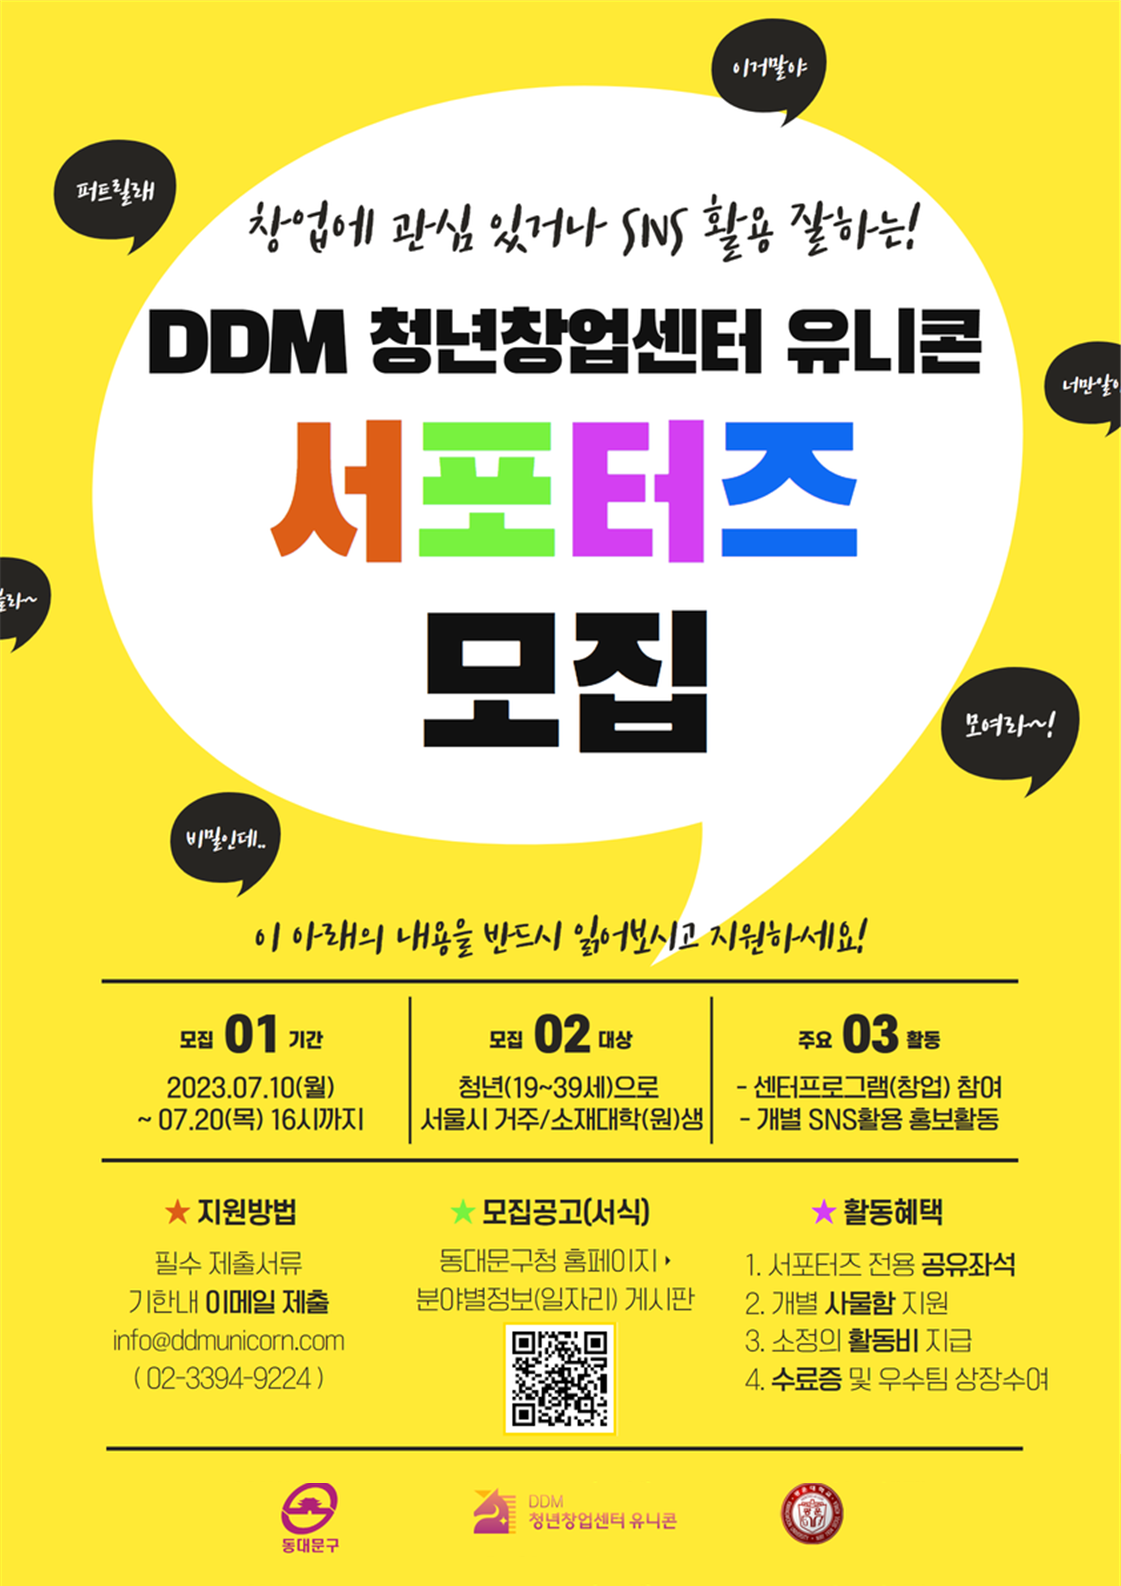 DDM 청년창업센터 유니콘 대학(원)생 서포터즈 모집